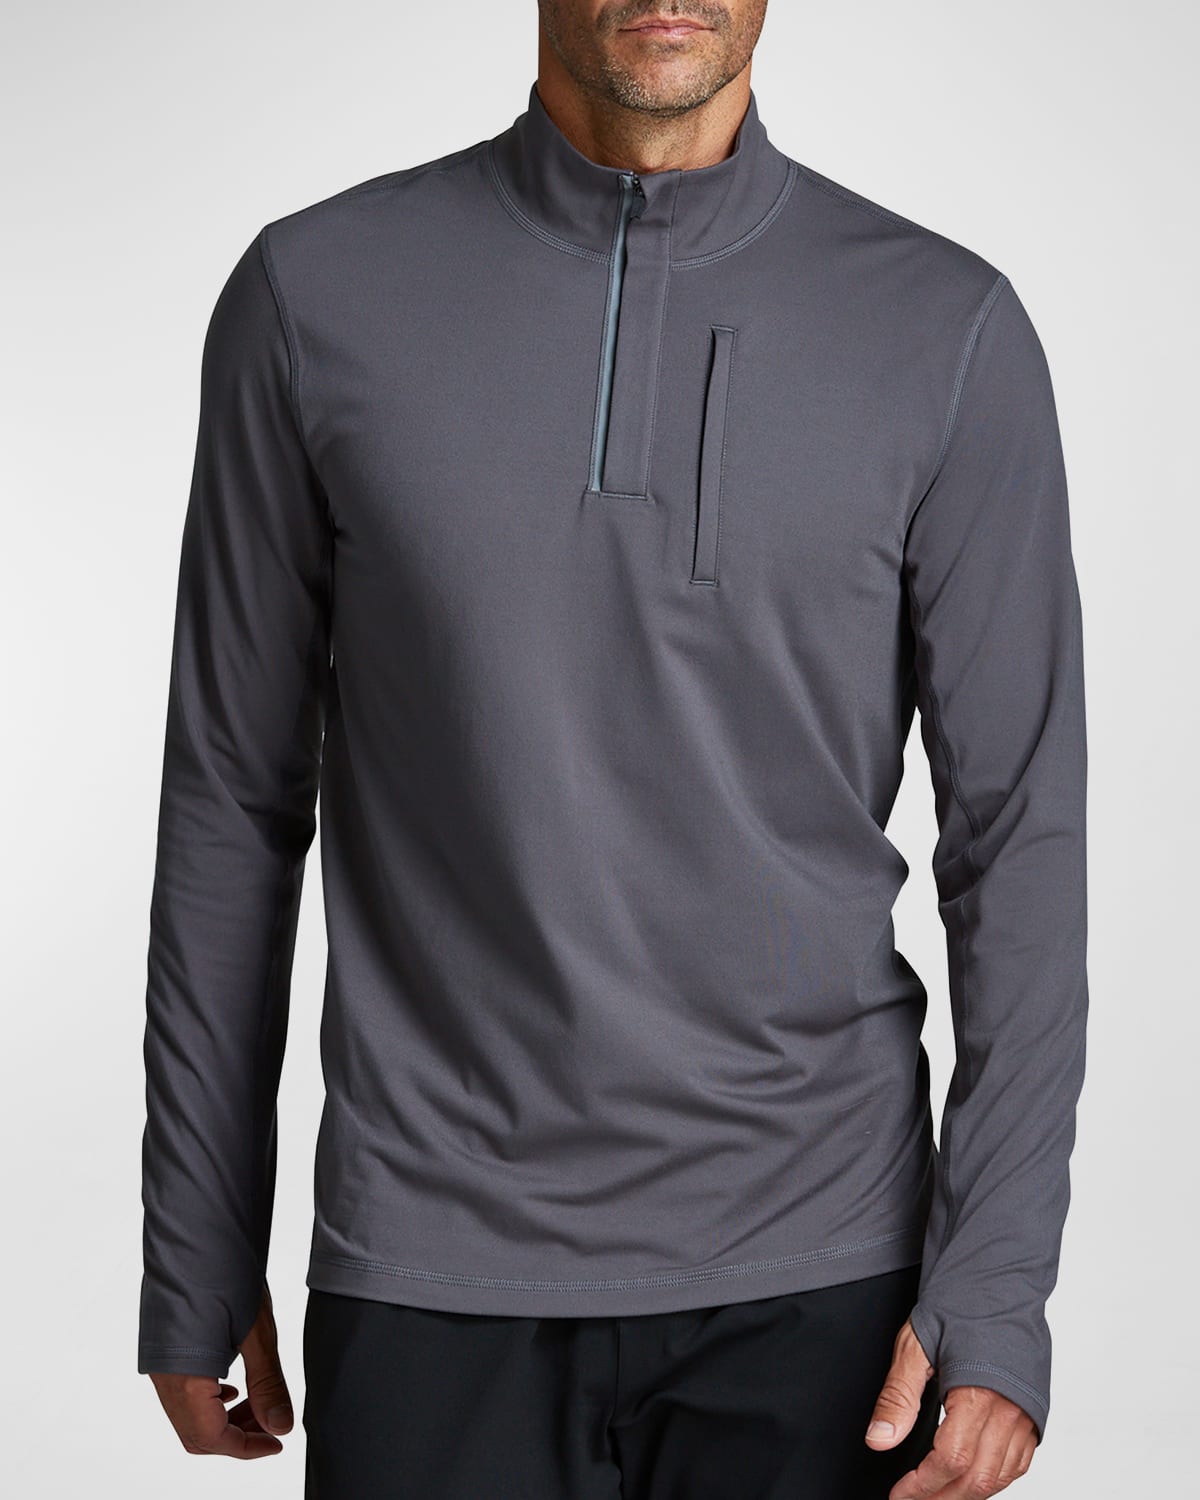 Fourlaps Men's Venture Half-Zip Jersey Sweatshirt